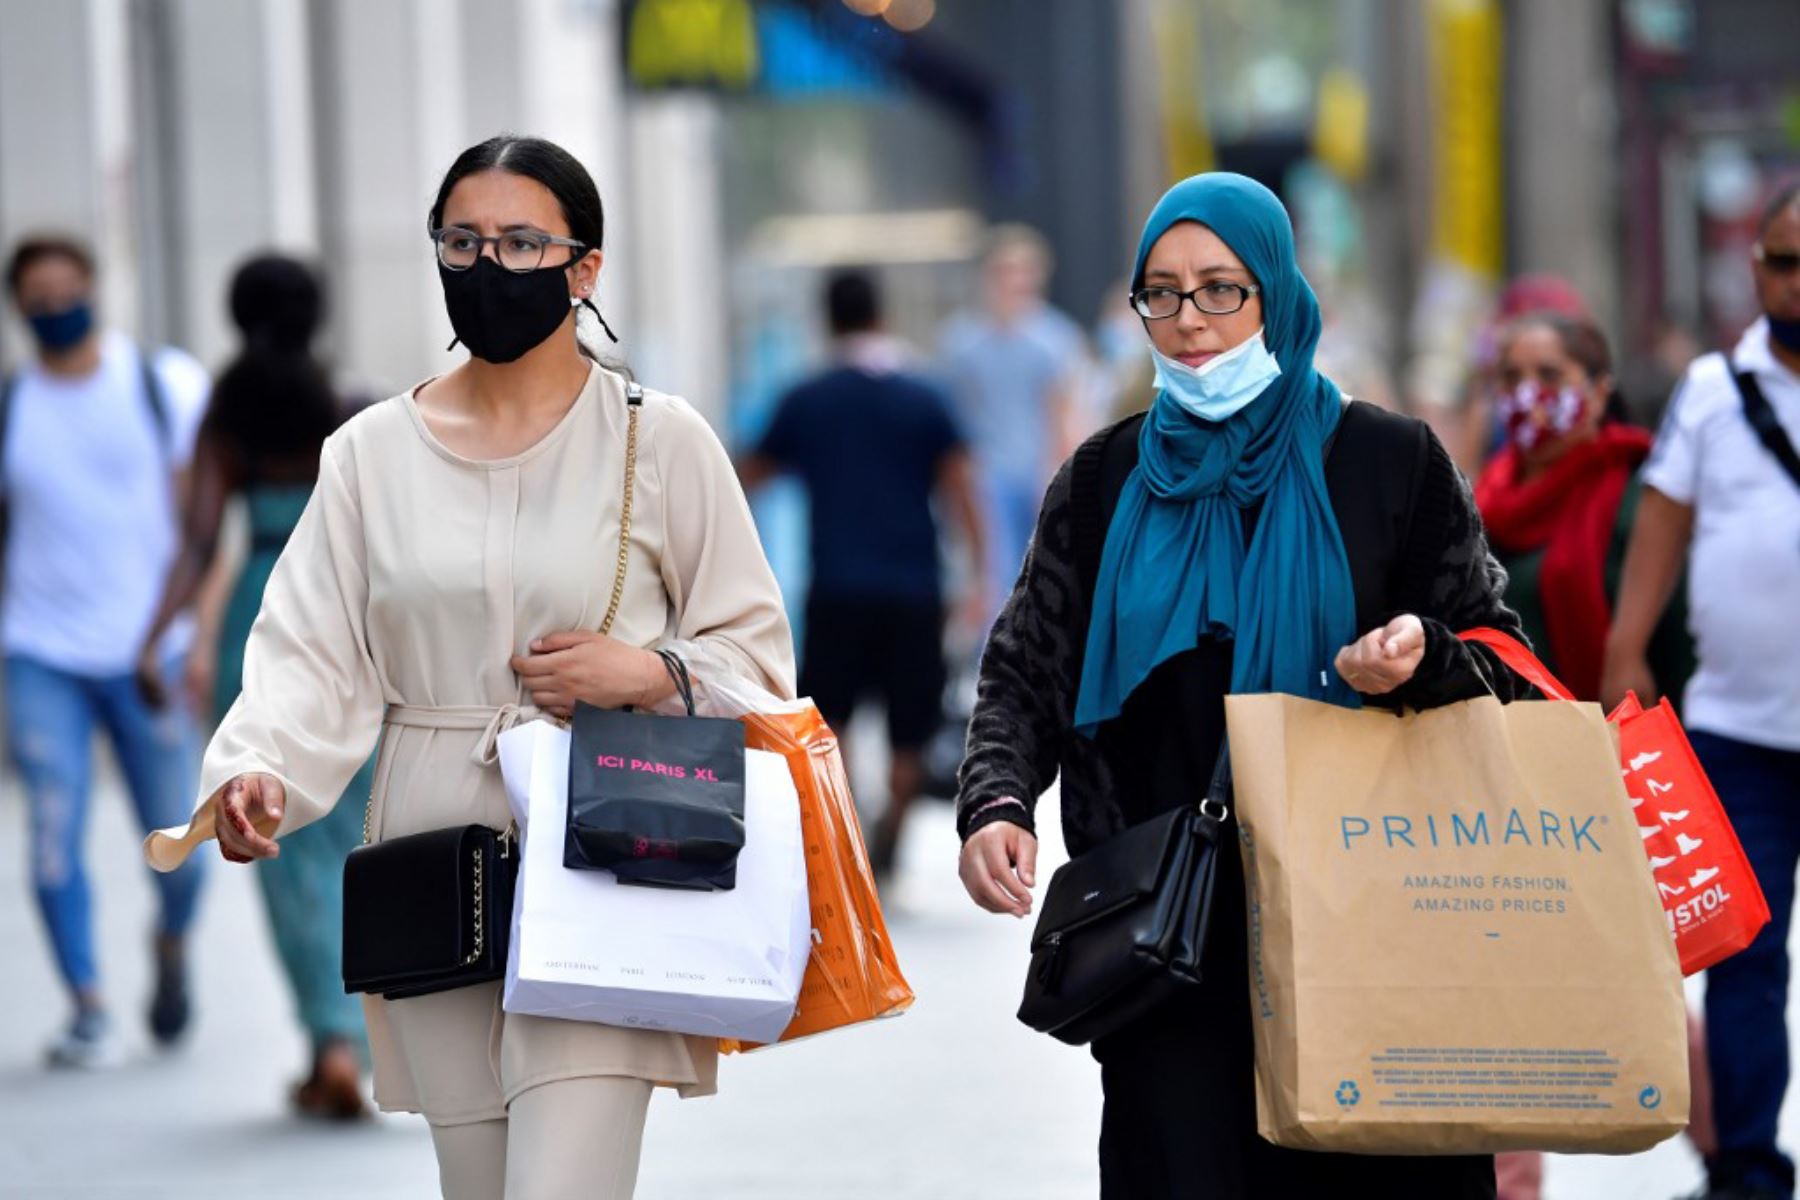 Mujeres se cubren la cara total o parcialmente con una mascarilla protectora mientras caminan por el centro de la ciudad de Amberes, Bélgica.

Foto: AFP